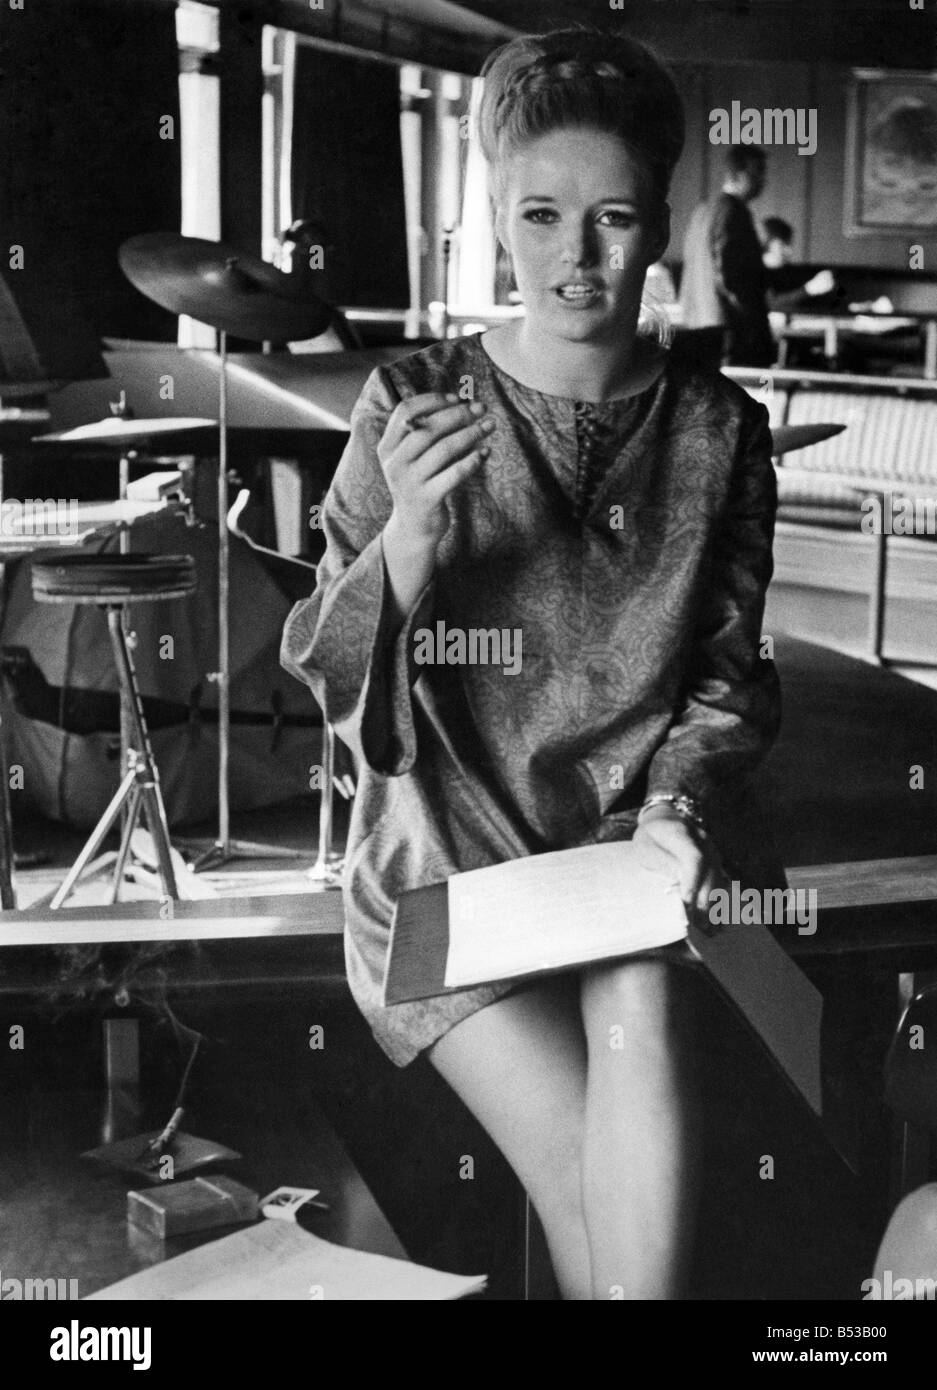 Playboy Bunnies Club école. Femme assise apprendre comment devenir un lapin pendant une classe;Avril 1968;P018499 Banque D'Images